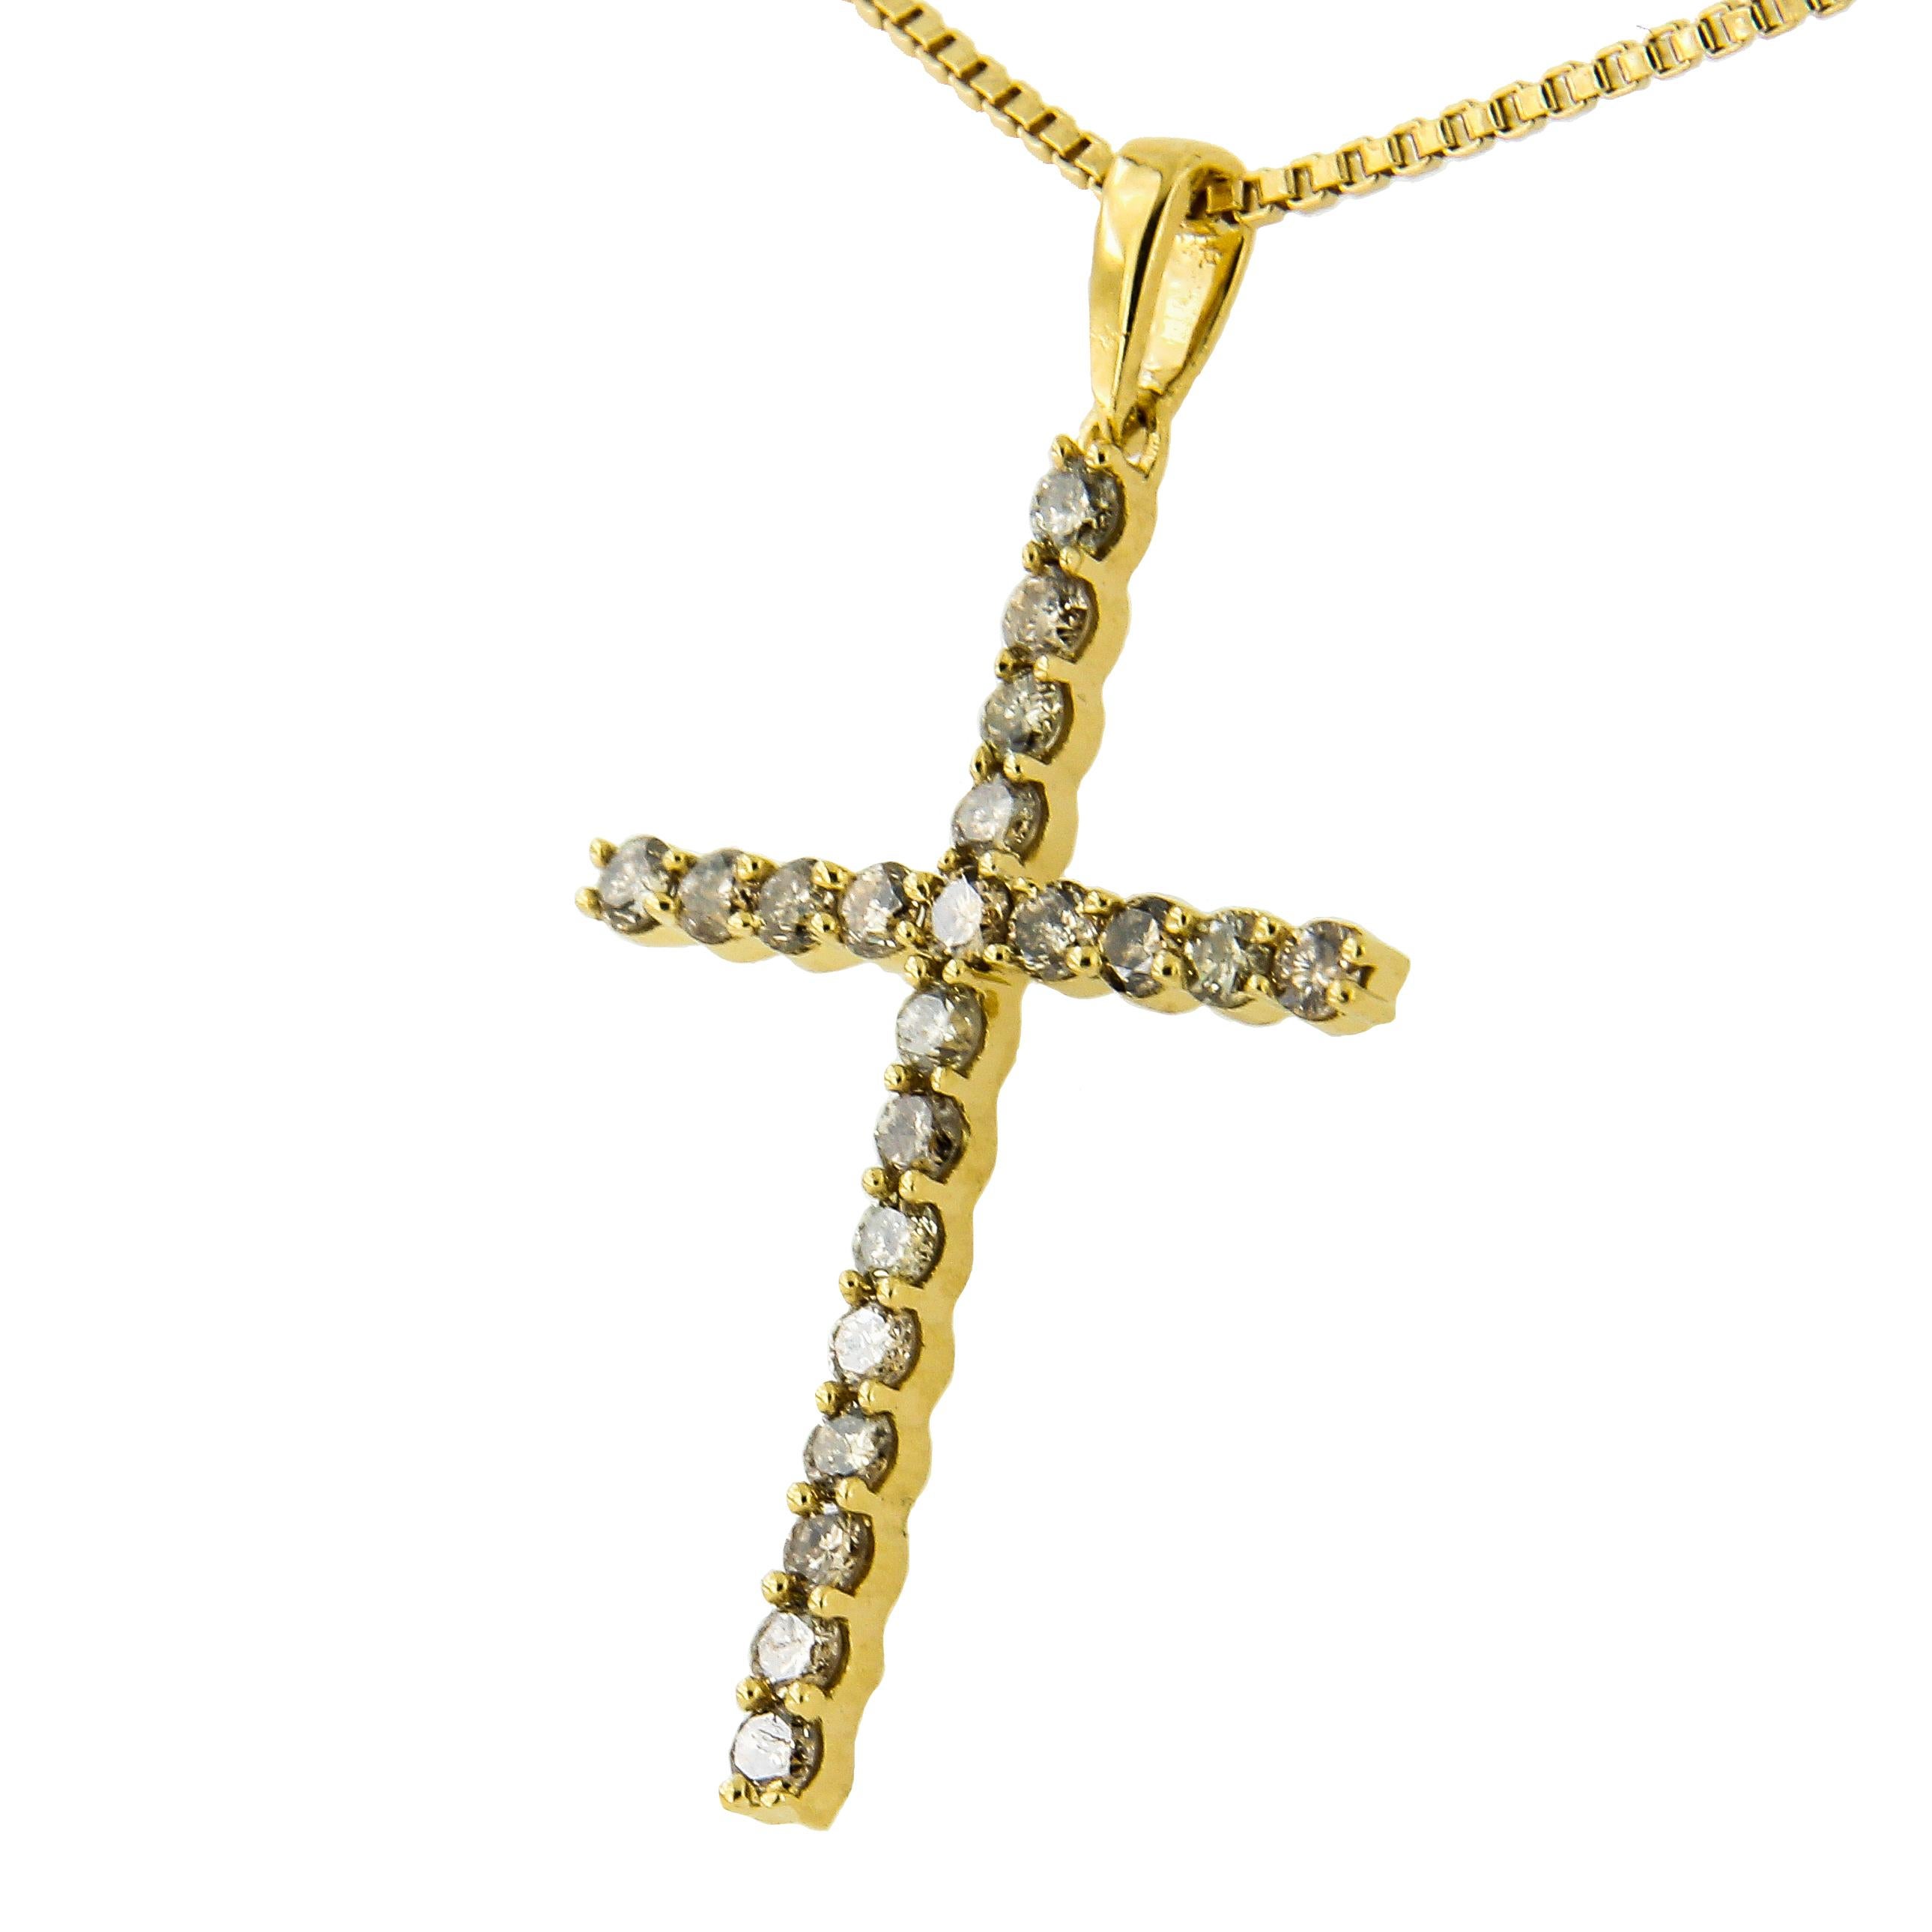 Umarmen Sie Ihre Spiritualität mit dieser funkelnden 14kt Gelbgold plattierten 925 Sterling Silber Kreuz Halskette. Dieser Anhänger ist mit 21 champagnerfarbenen Diamanten in klassischer gemeinsamer Zackenfassung verziert. Die Diamanten sind im